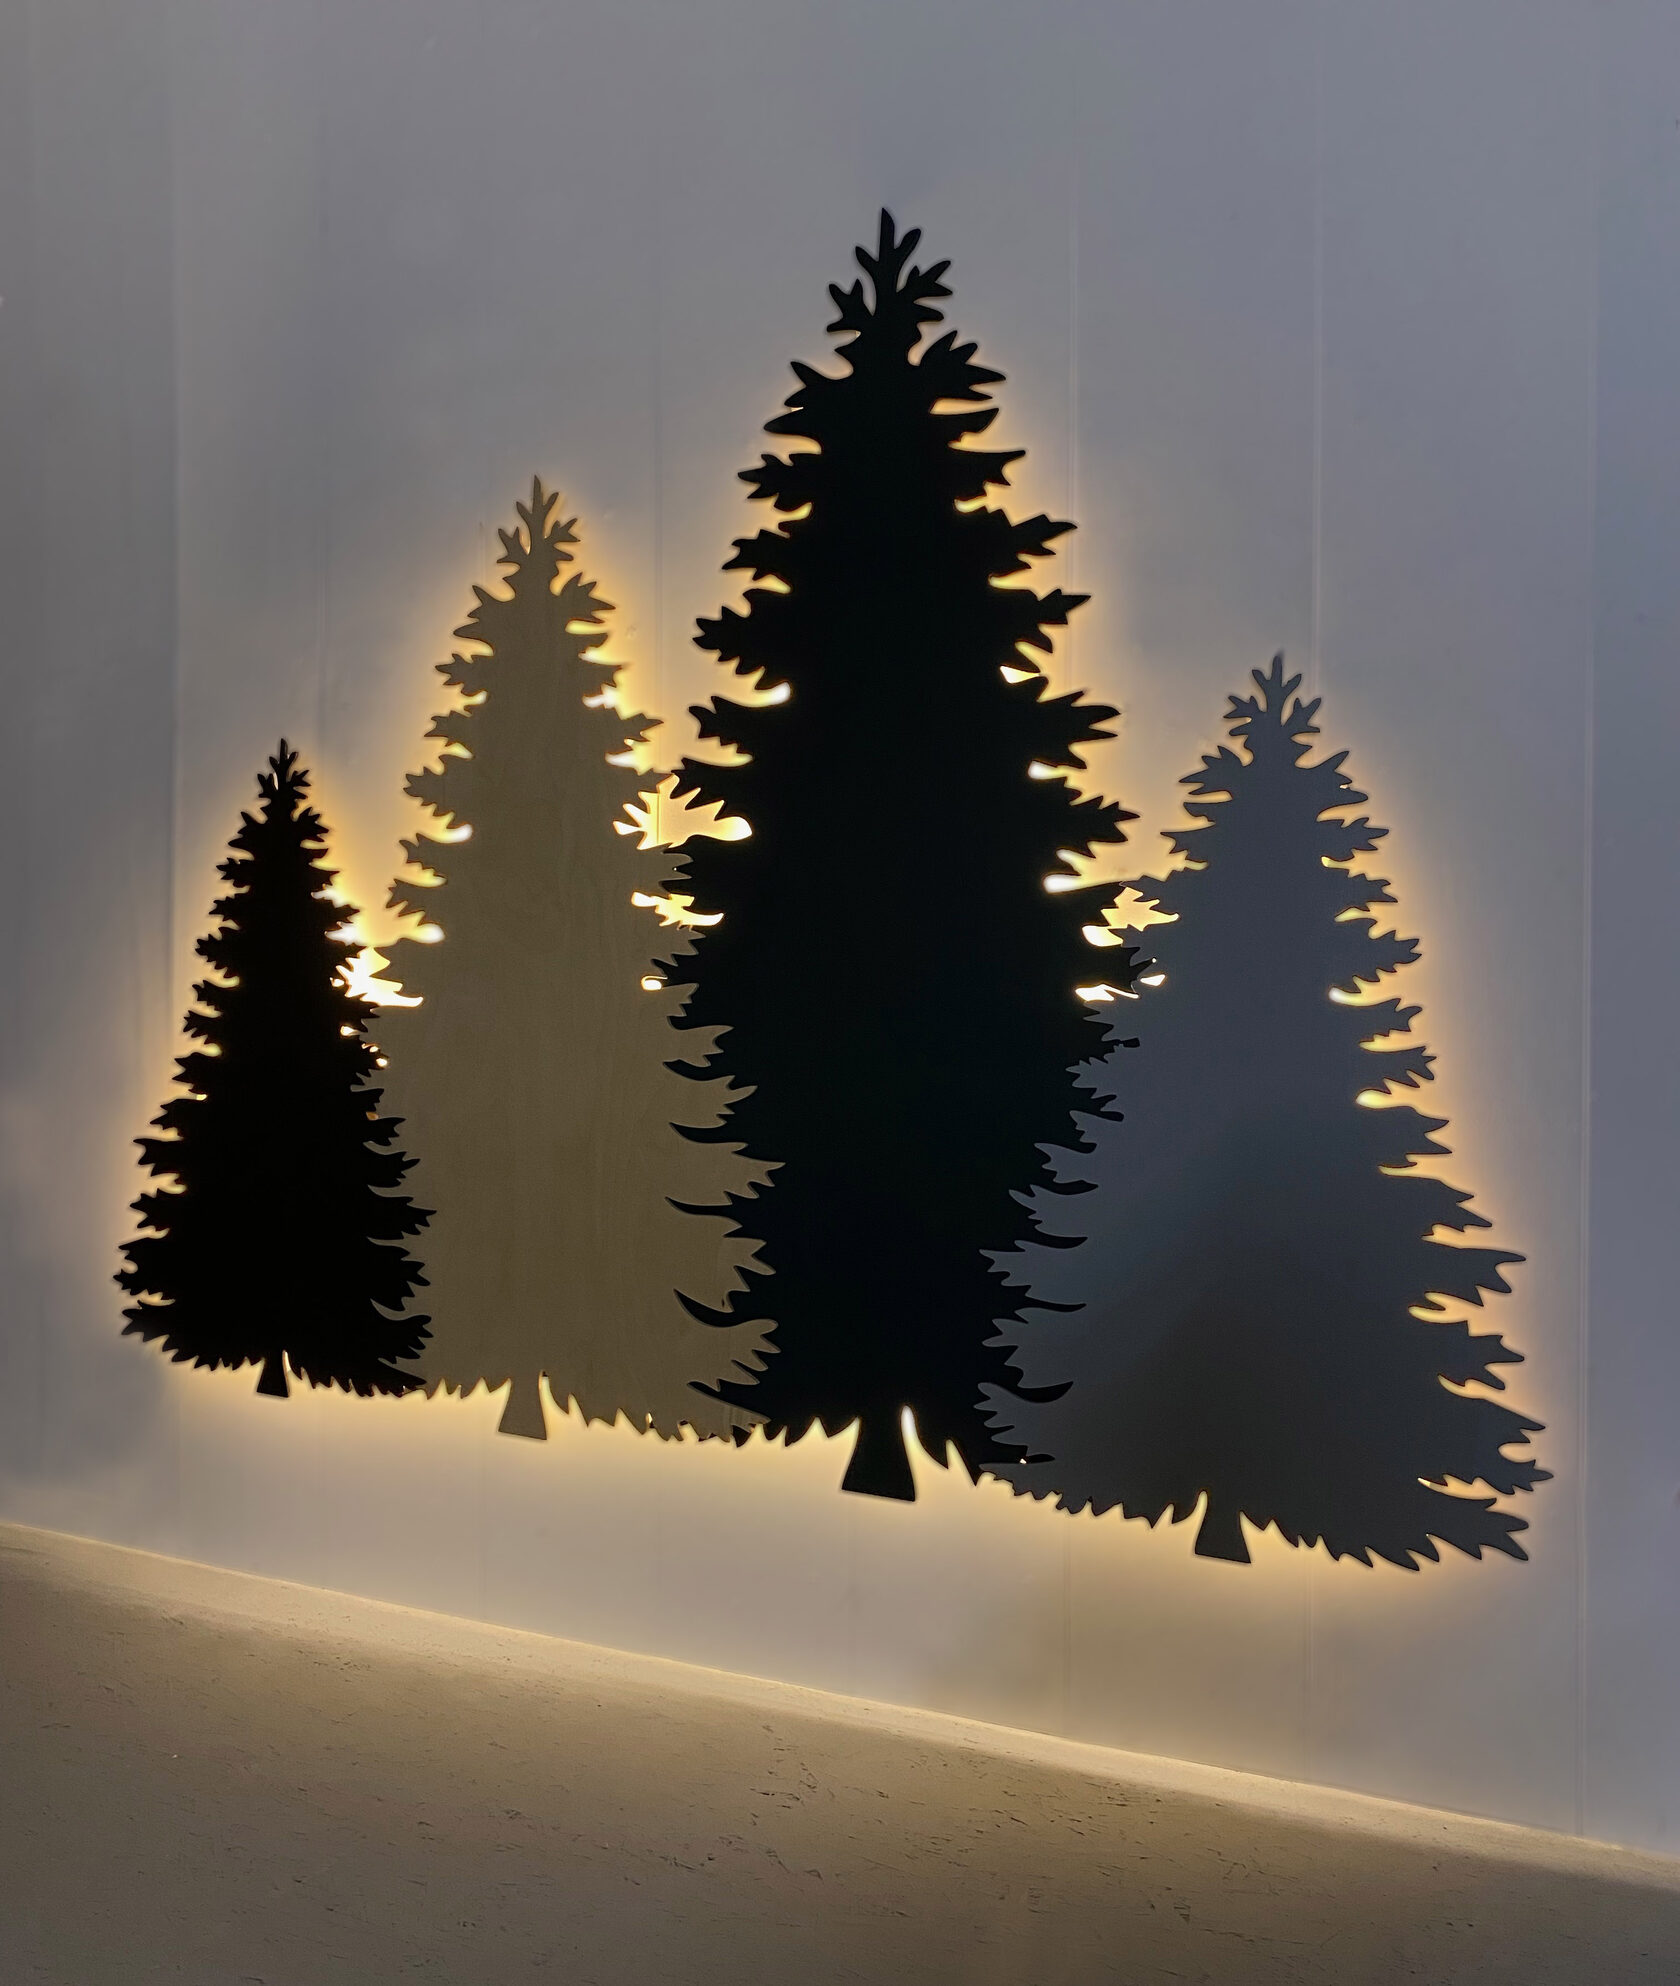 панно елки с подсветкой на стене 